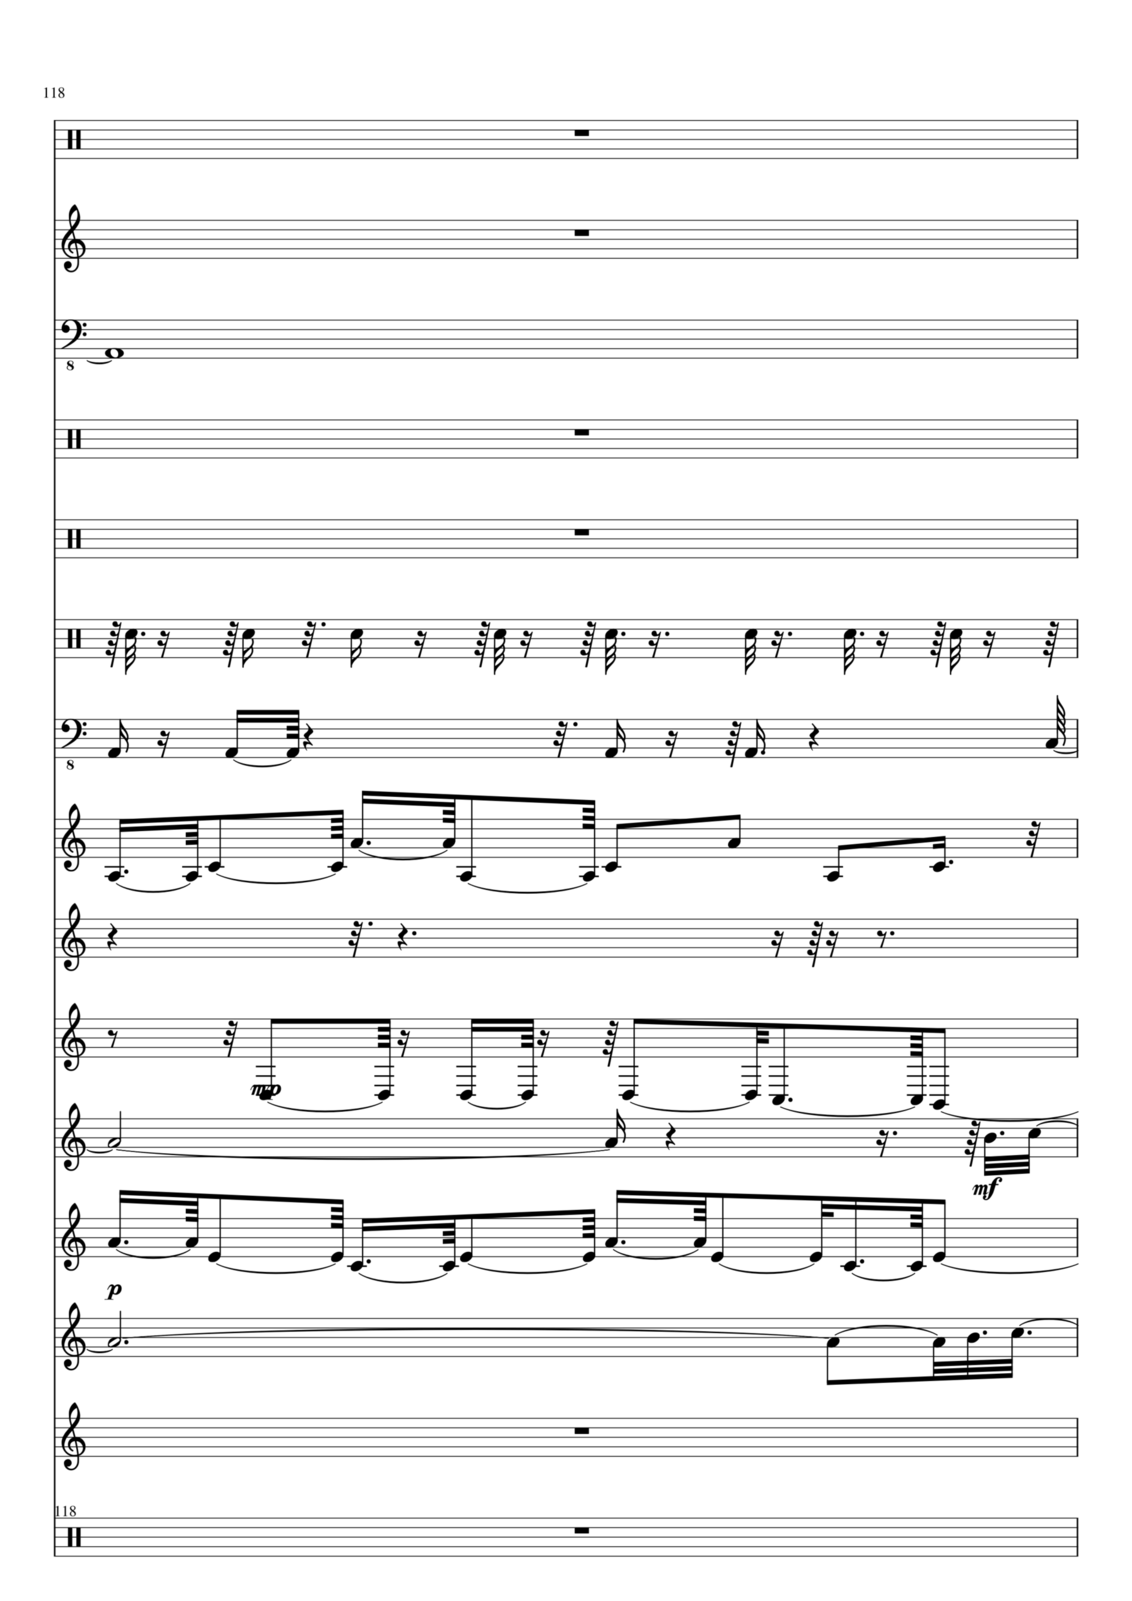 Utro polinyi slide, Image 118